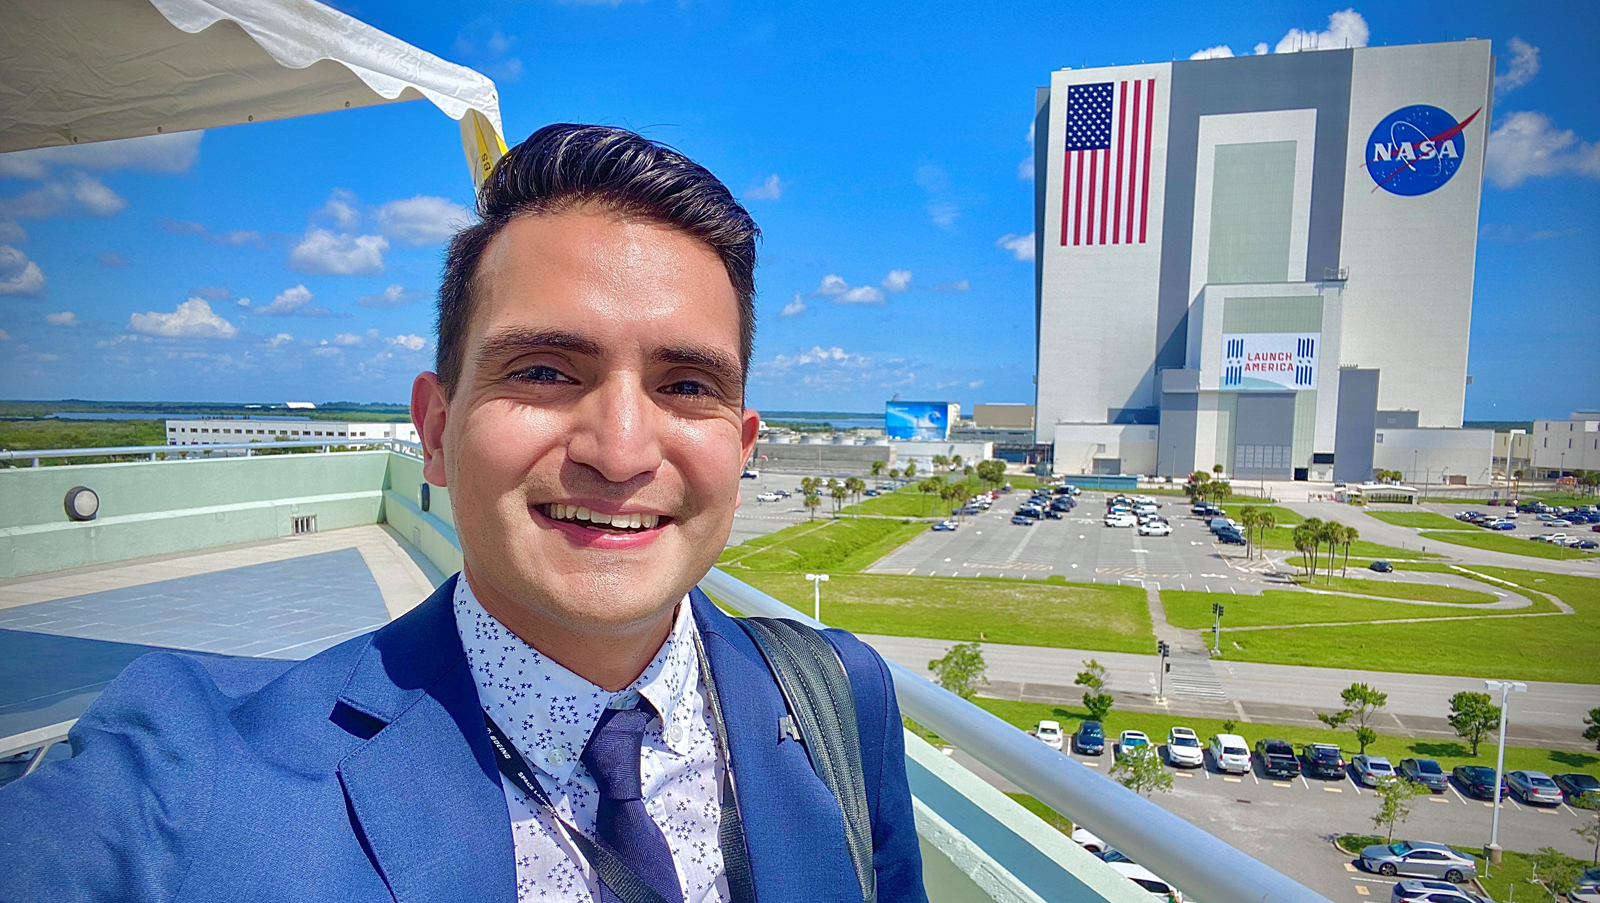 Juan “Tony” Castilleja standing in front of NASA building